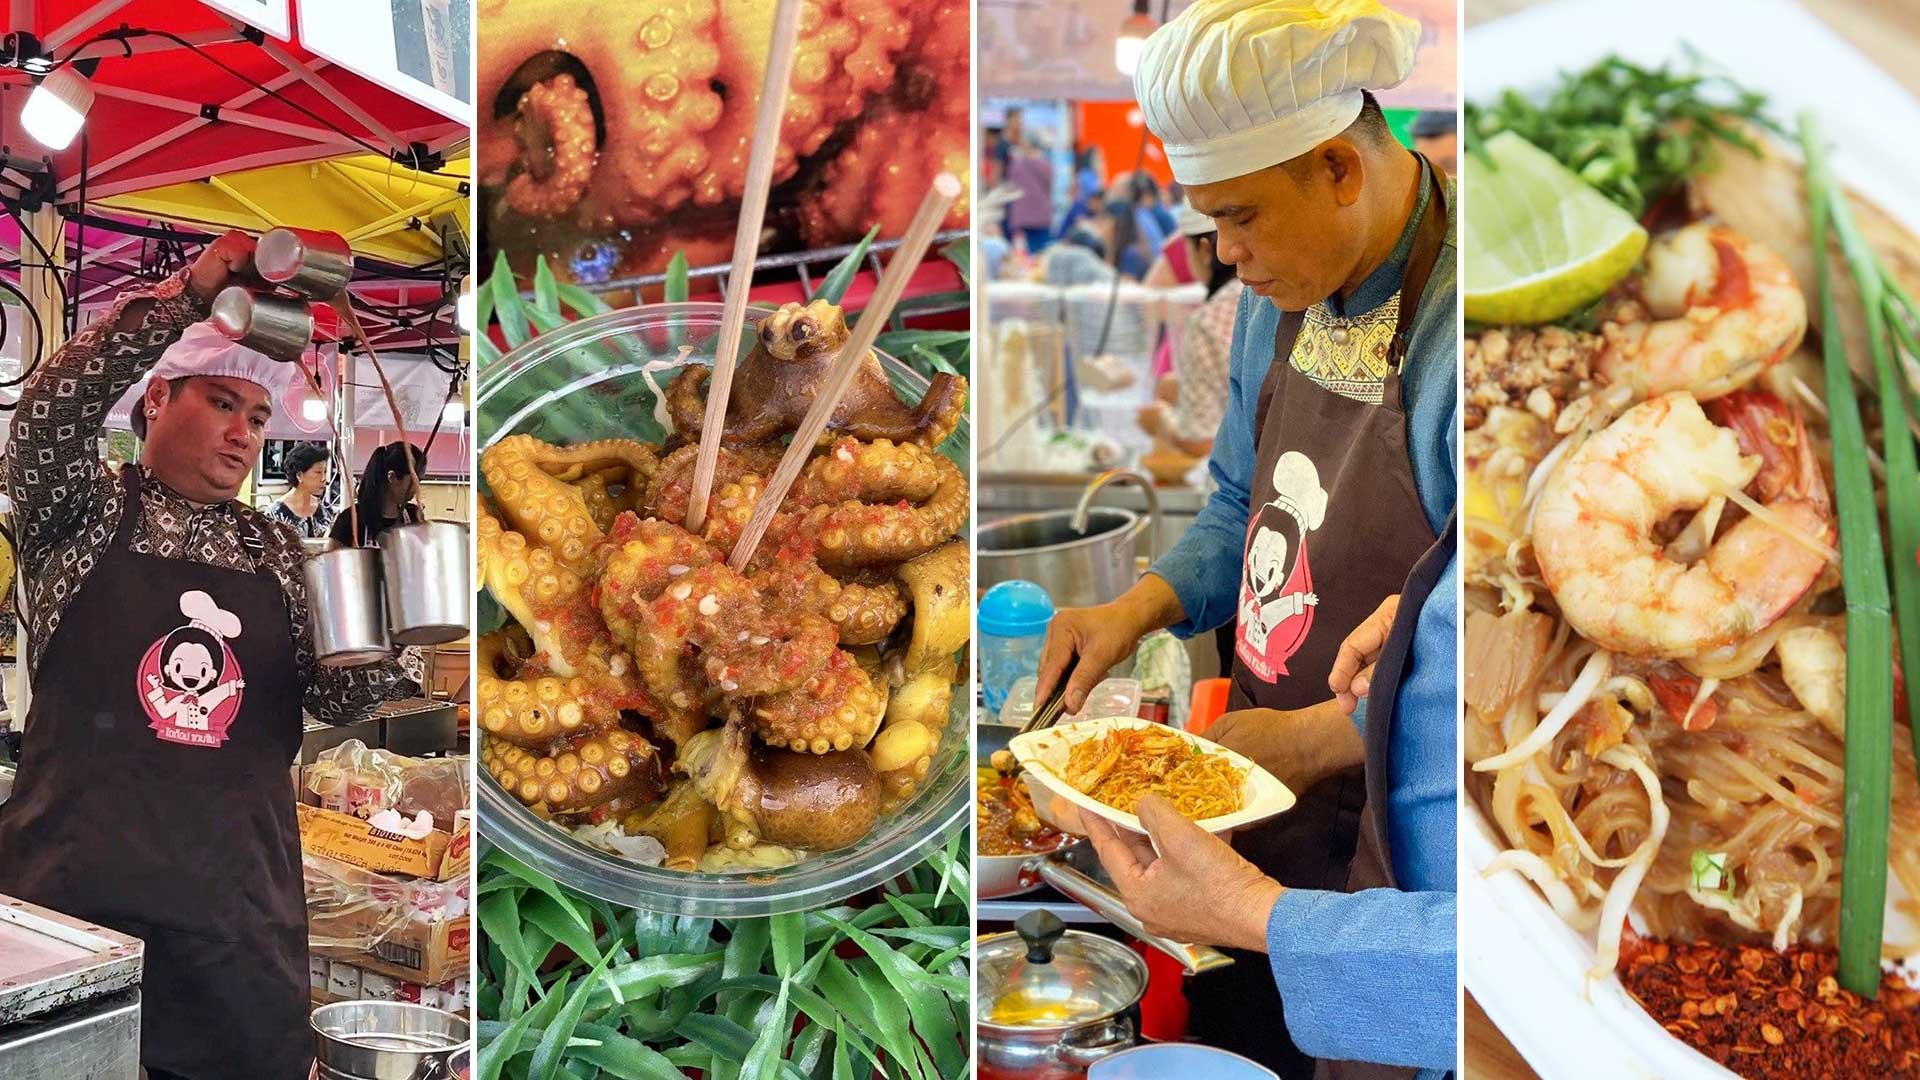 Pad Thai - Case study marketing kinh điển tầm quốc gia: Vừa ra đời đã đại diện ẩm thực Thái Lan, từ món ăn cứu đói thành “quốc hồn quốc túy” - Ảnh 2.